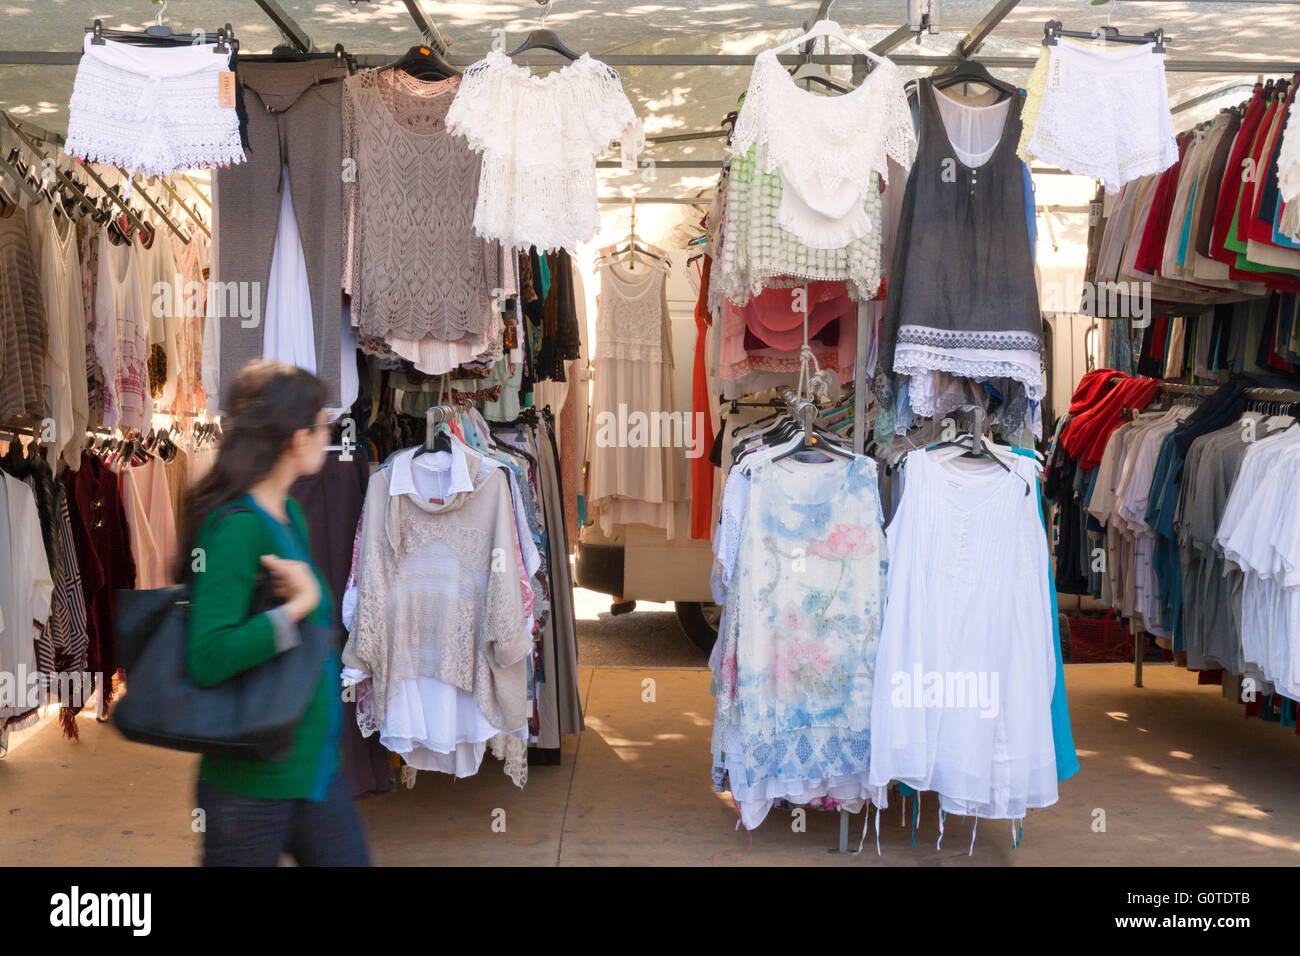 Mujer compras para la ropa en un mercado español, el mercado al